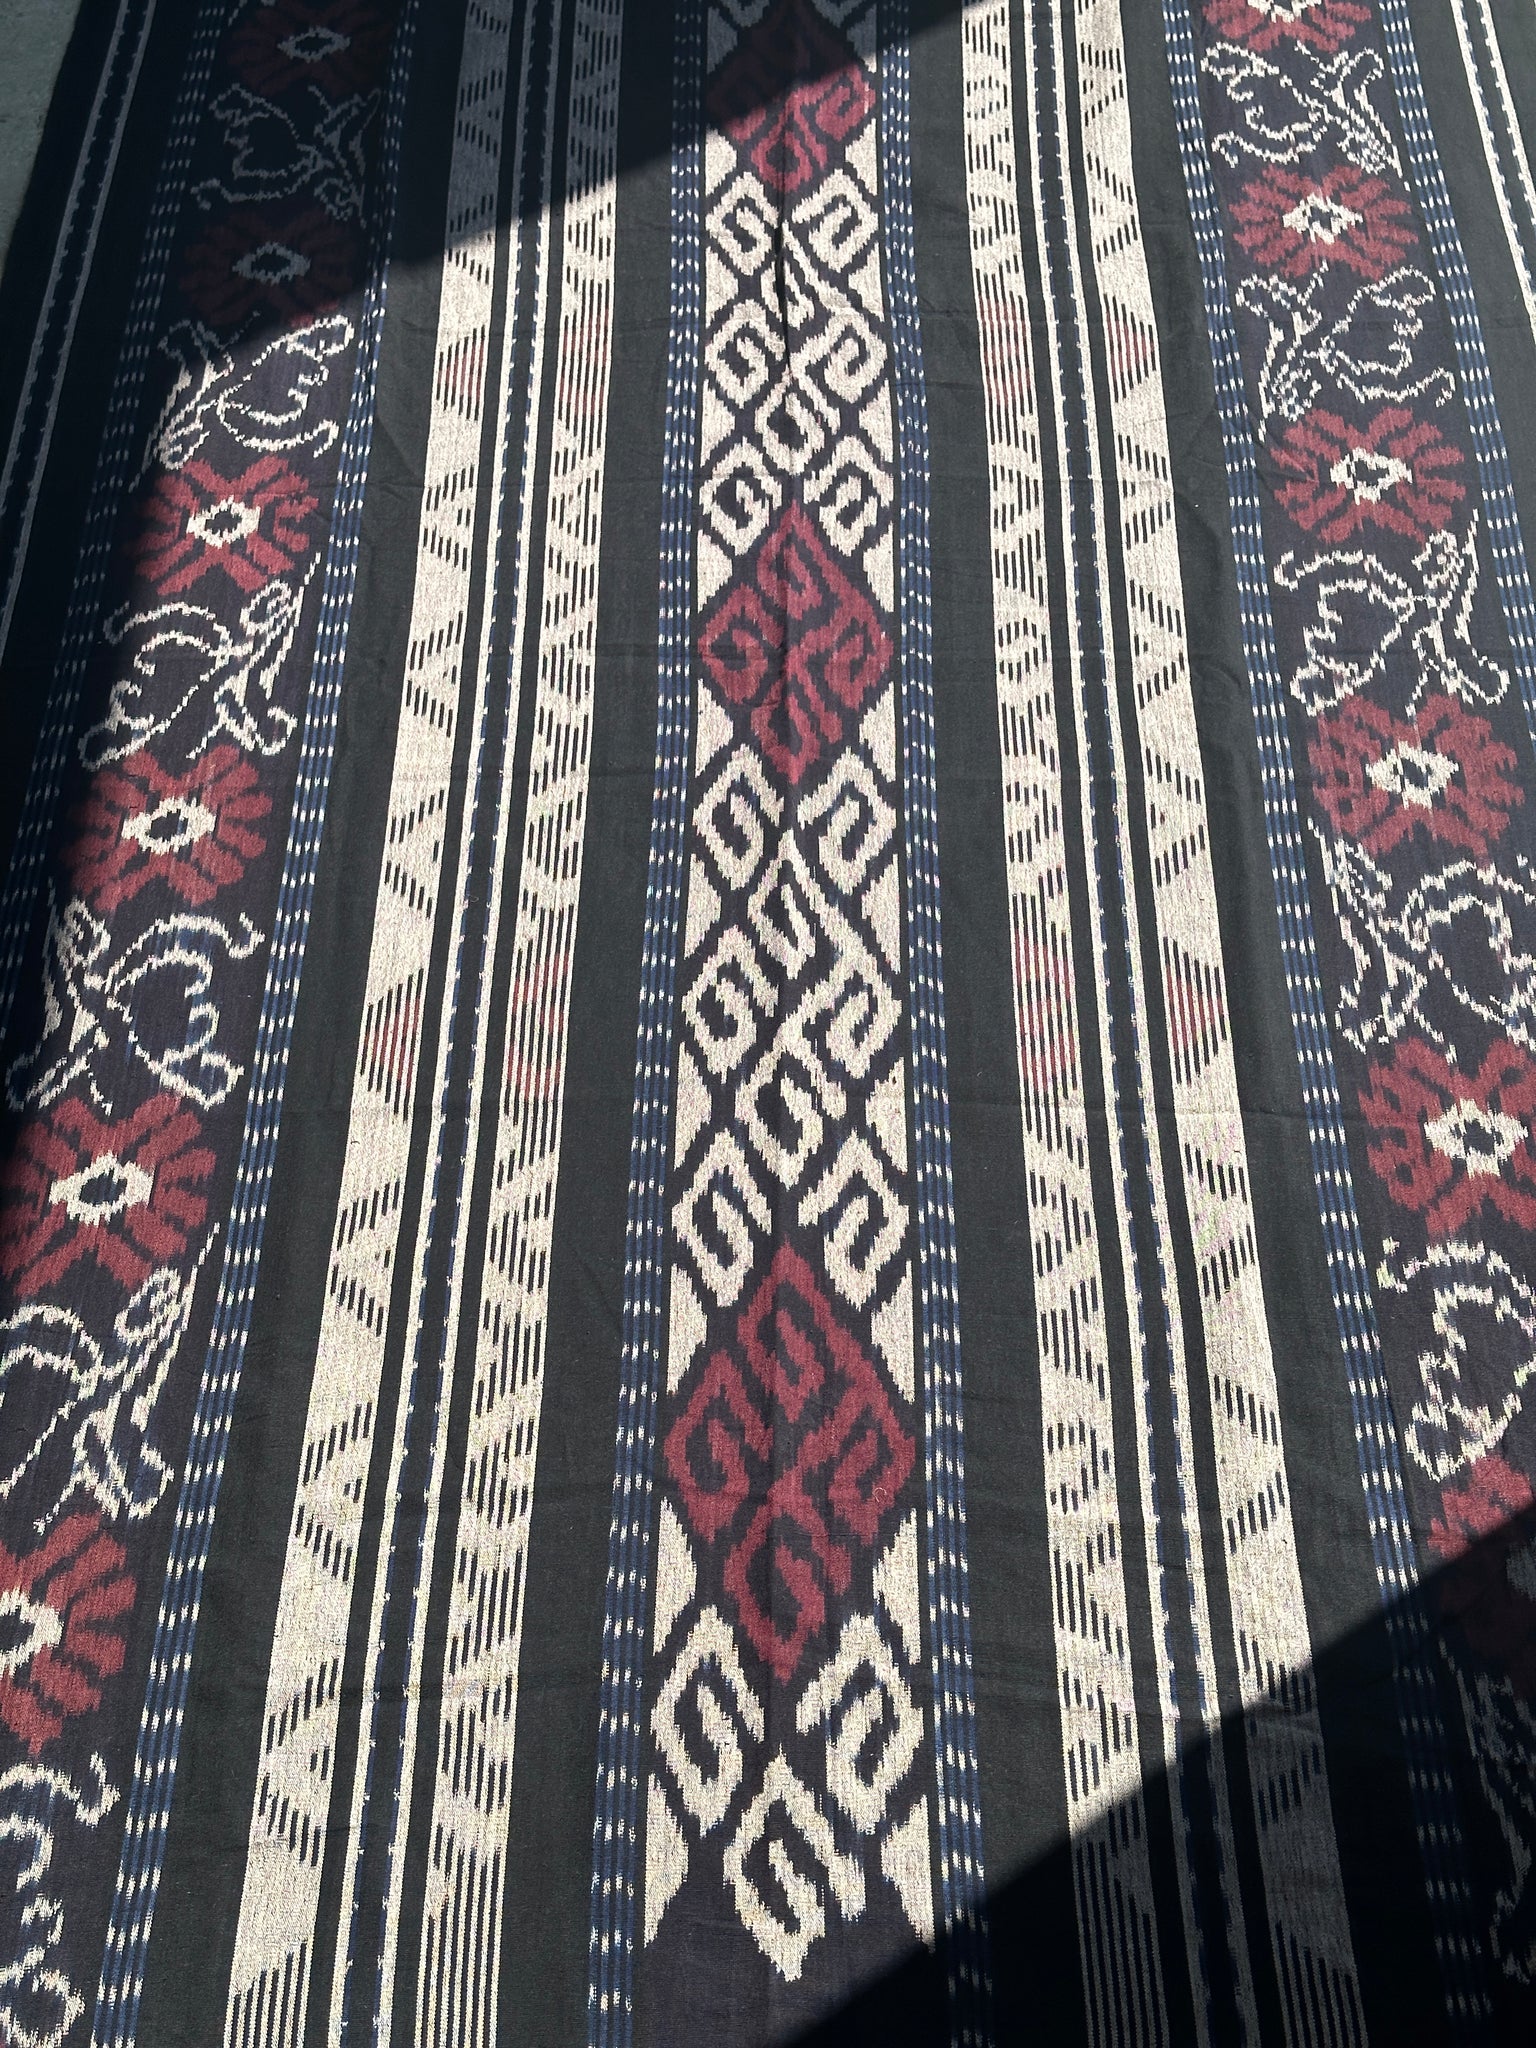 Grand ikat à frise de losanges et motifs floraux stylisés (noir, rouge, blanc) 2m35x1m15